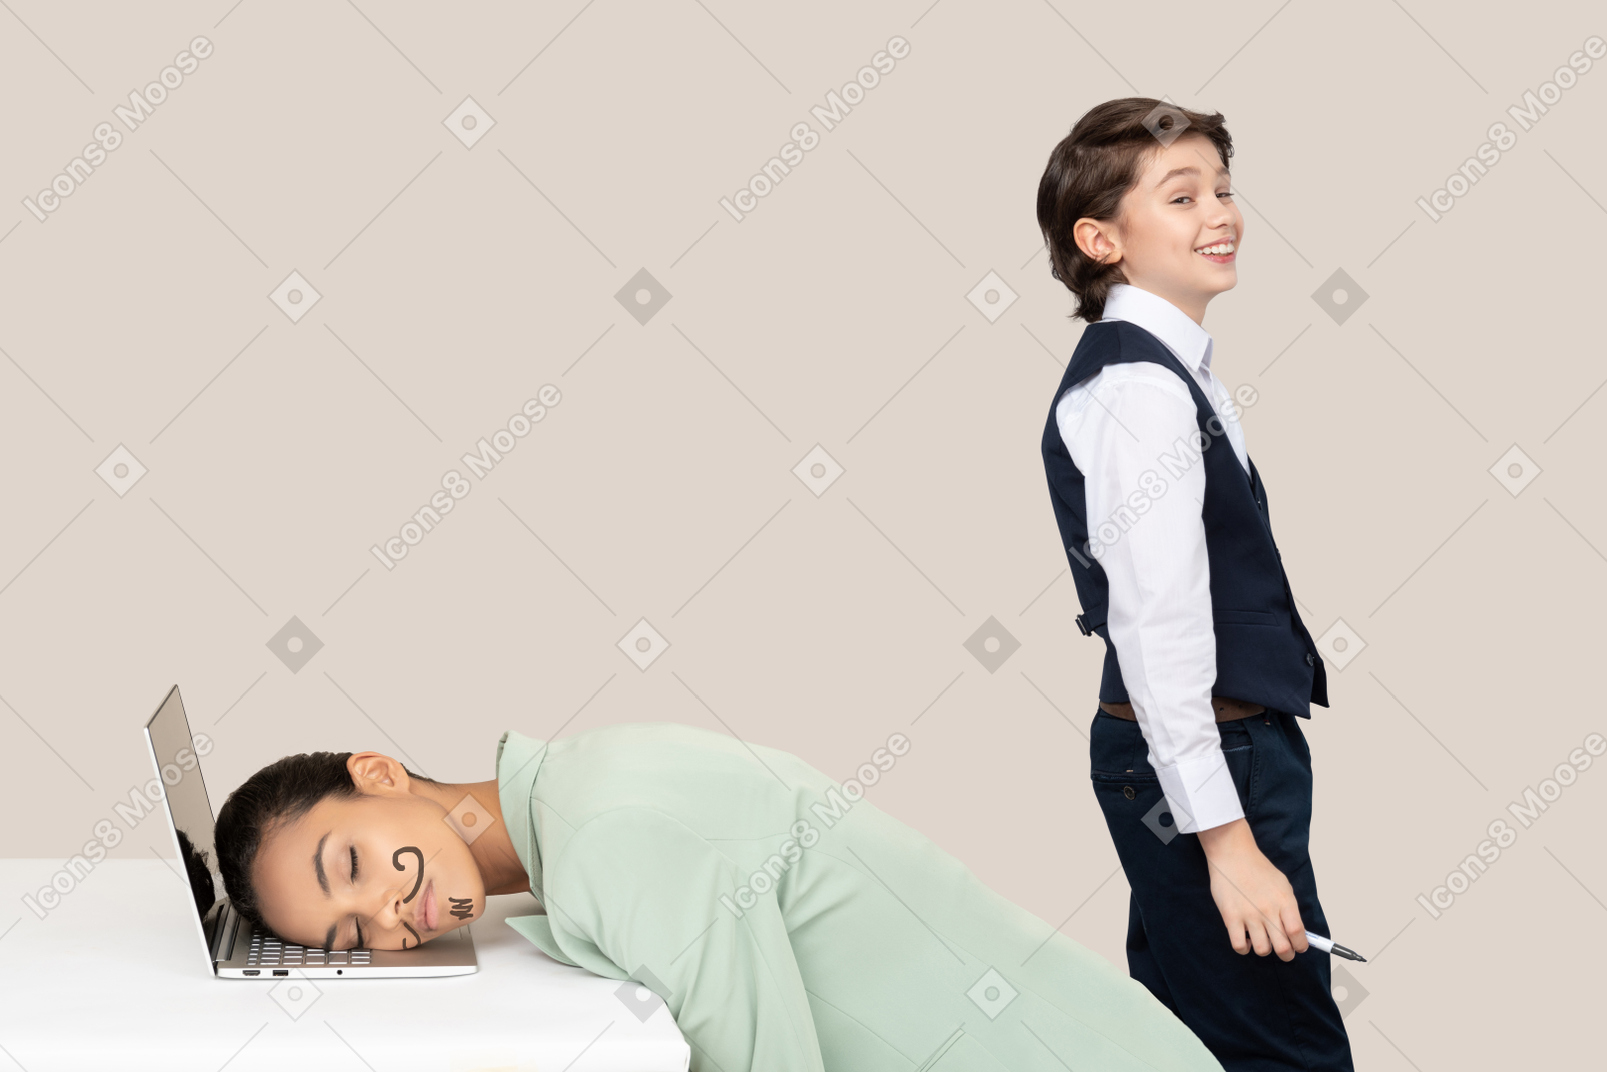 Ungezogener junge, der über seinen lehrer lacht, der mit einem schnurrbart im gesicht schläft